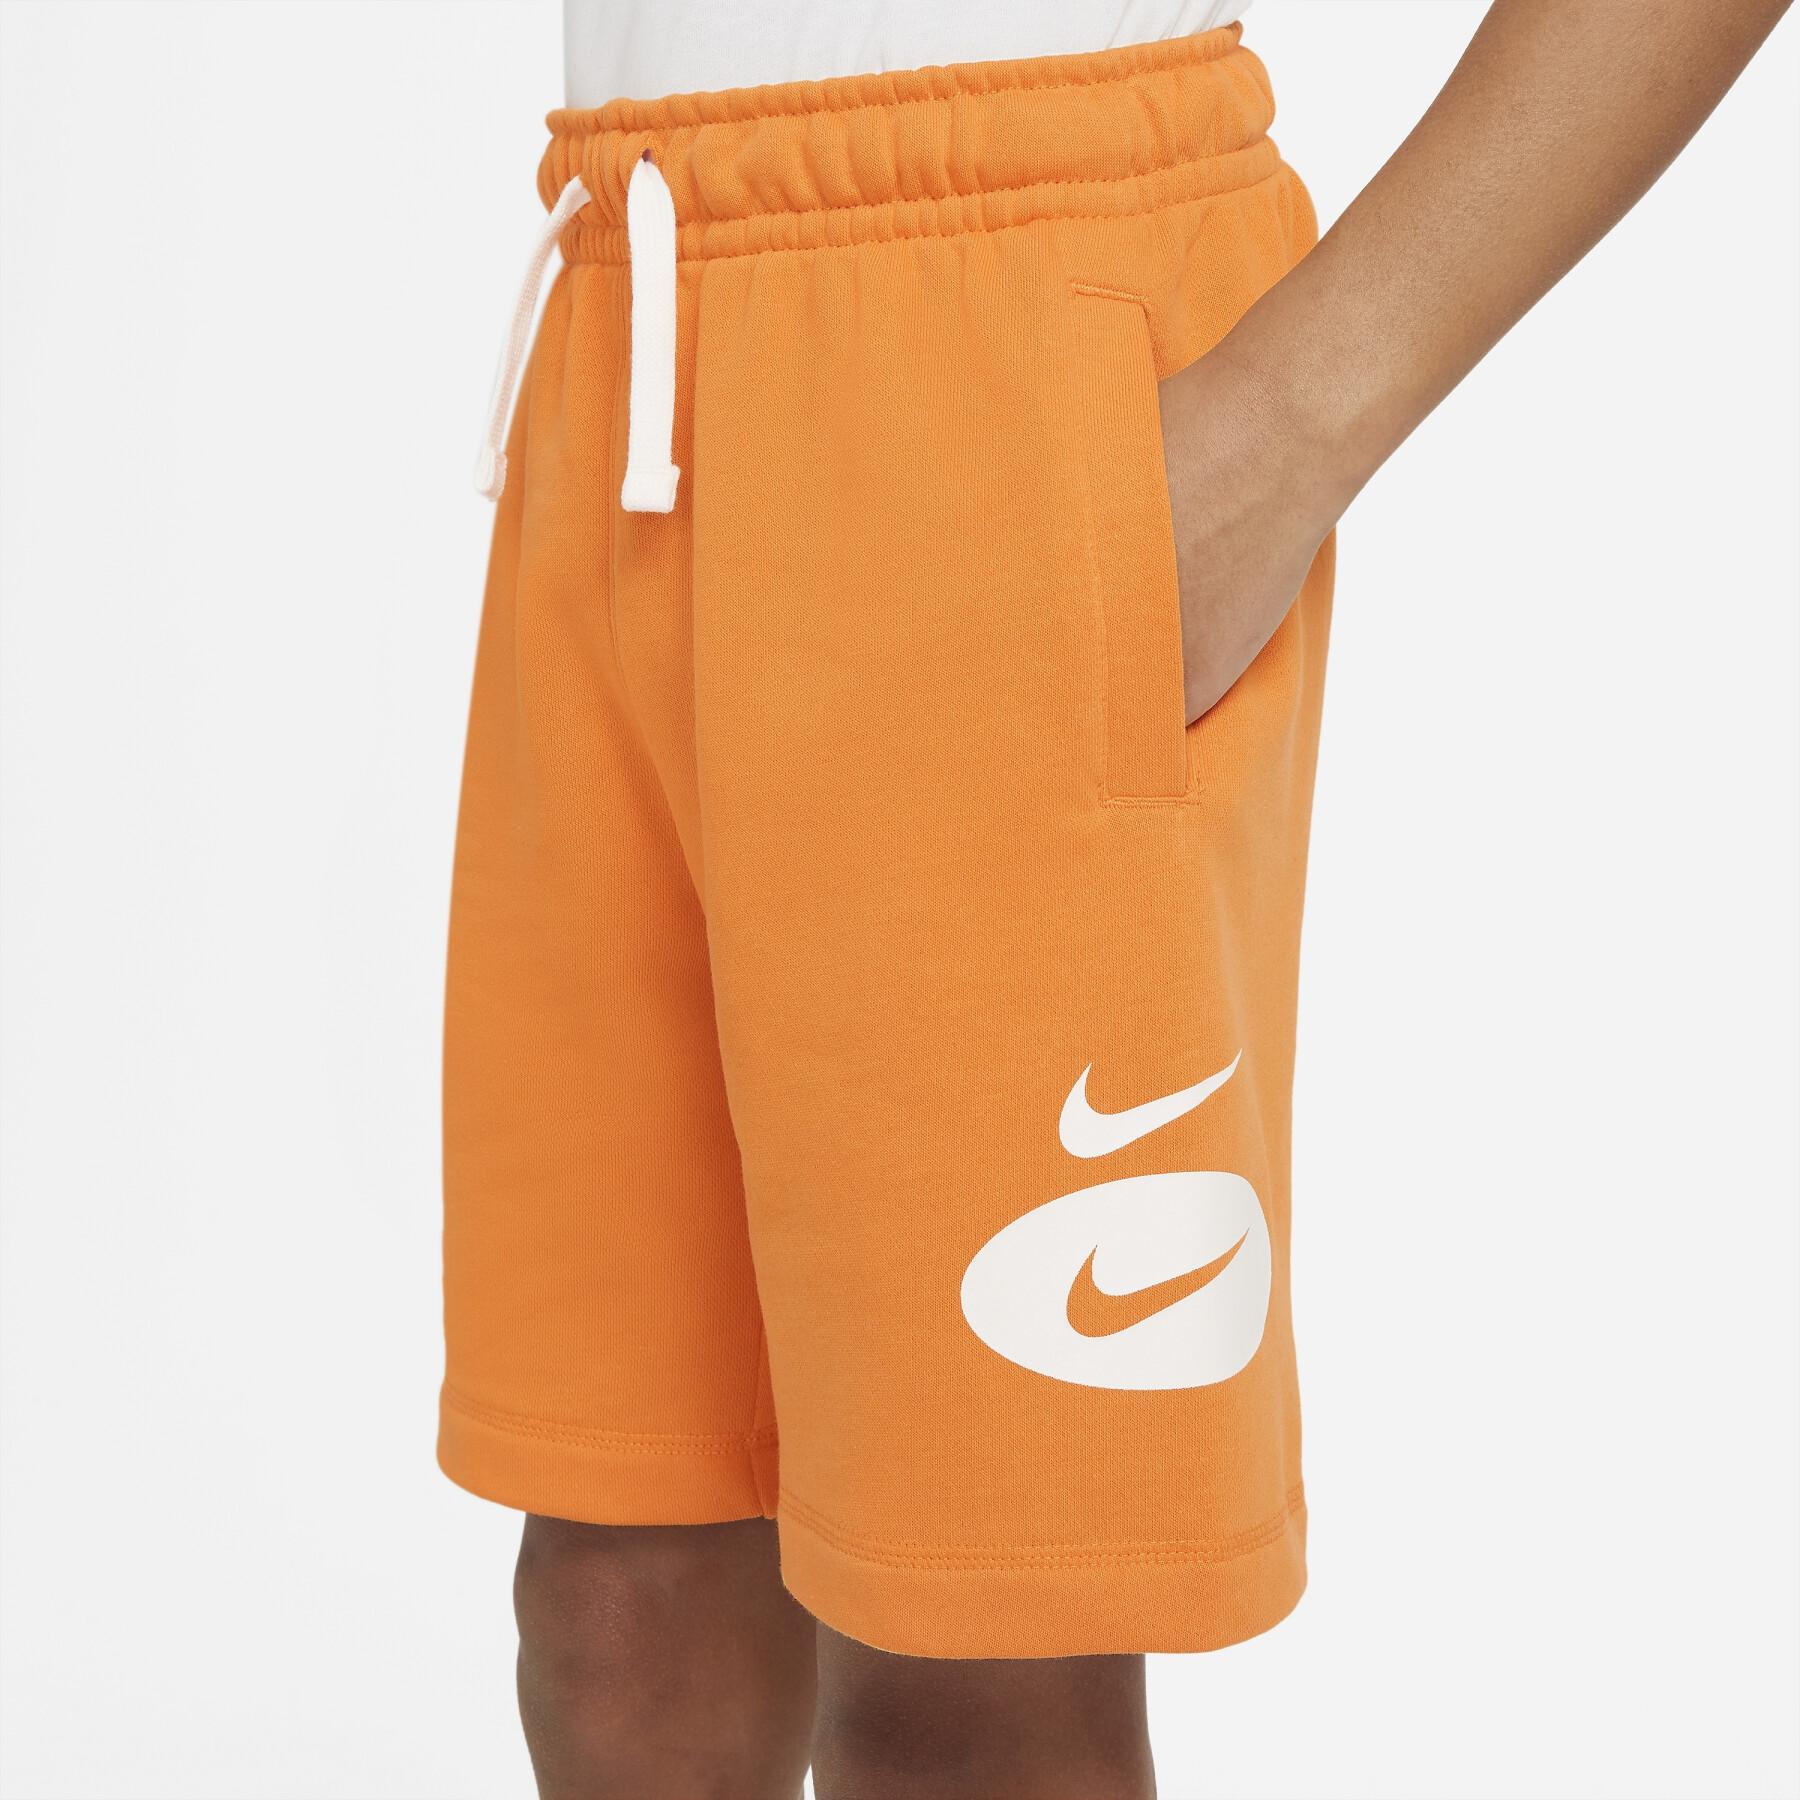 Pantalones cortos para niños Nike Core